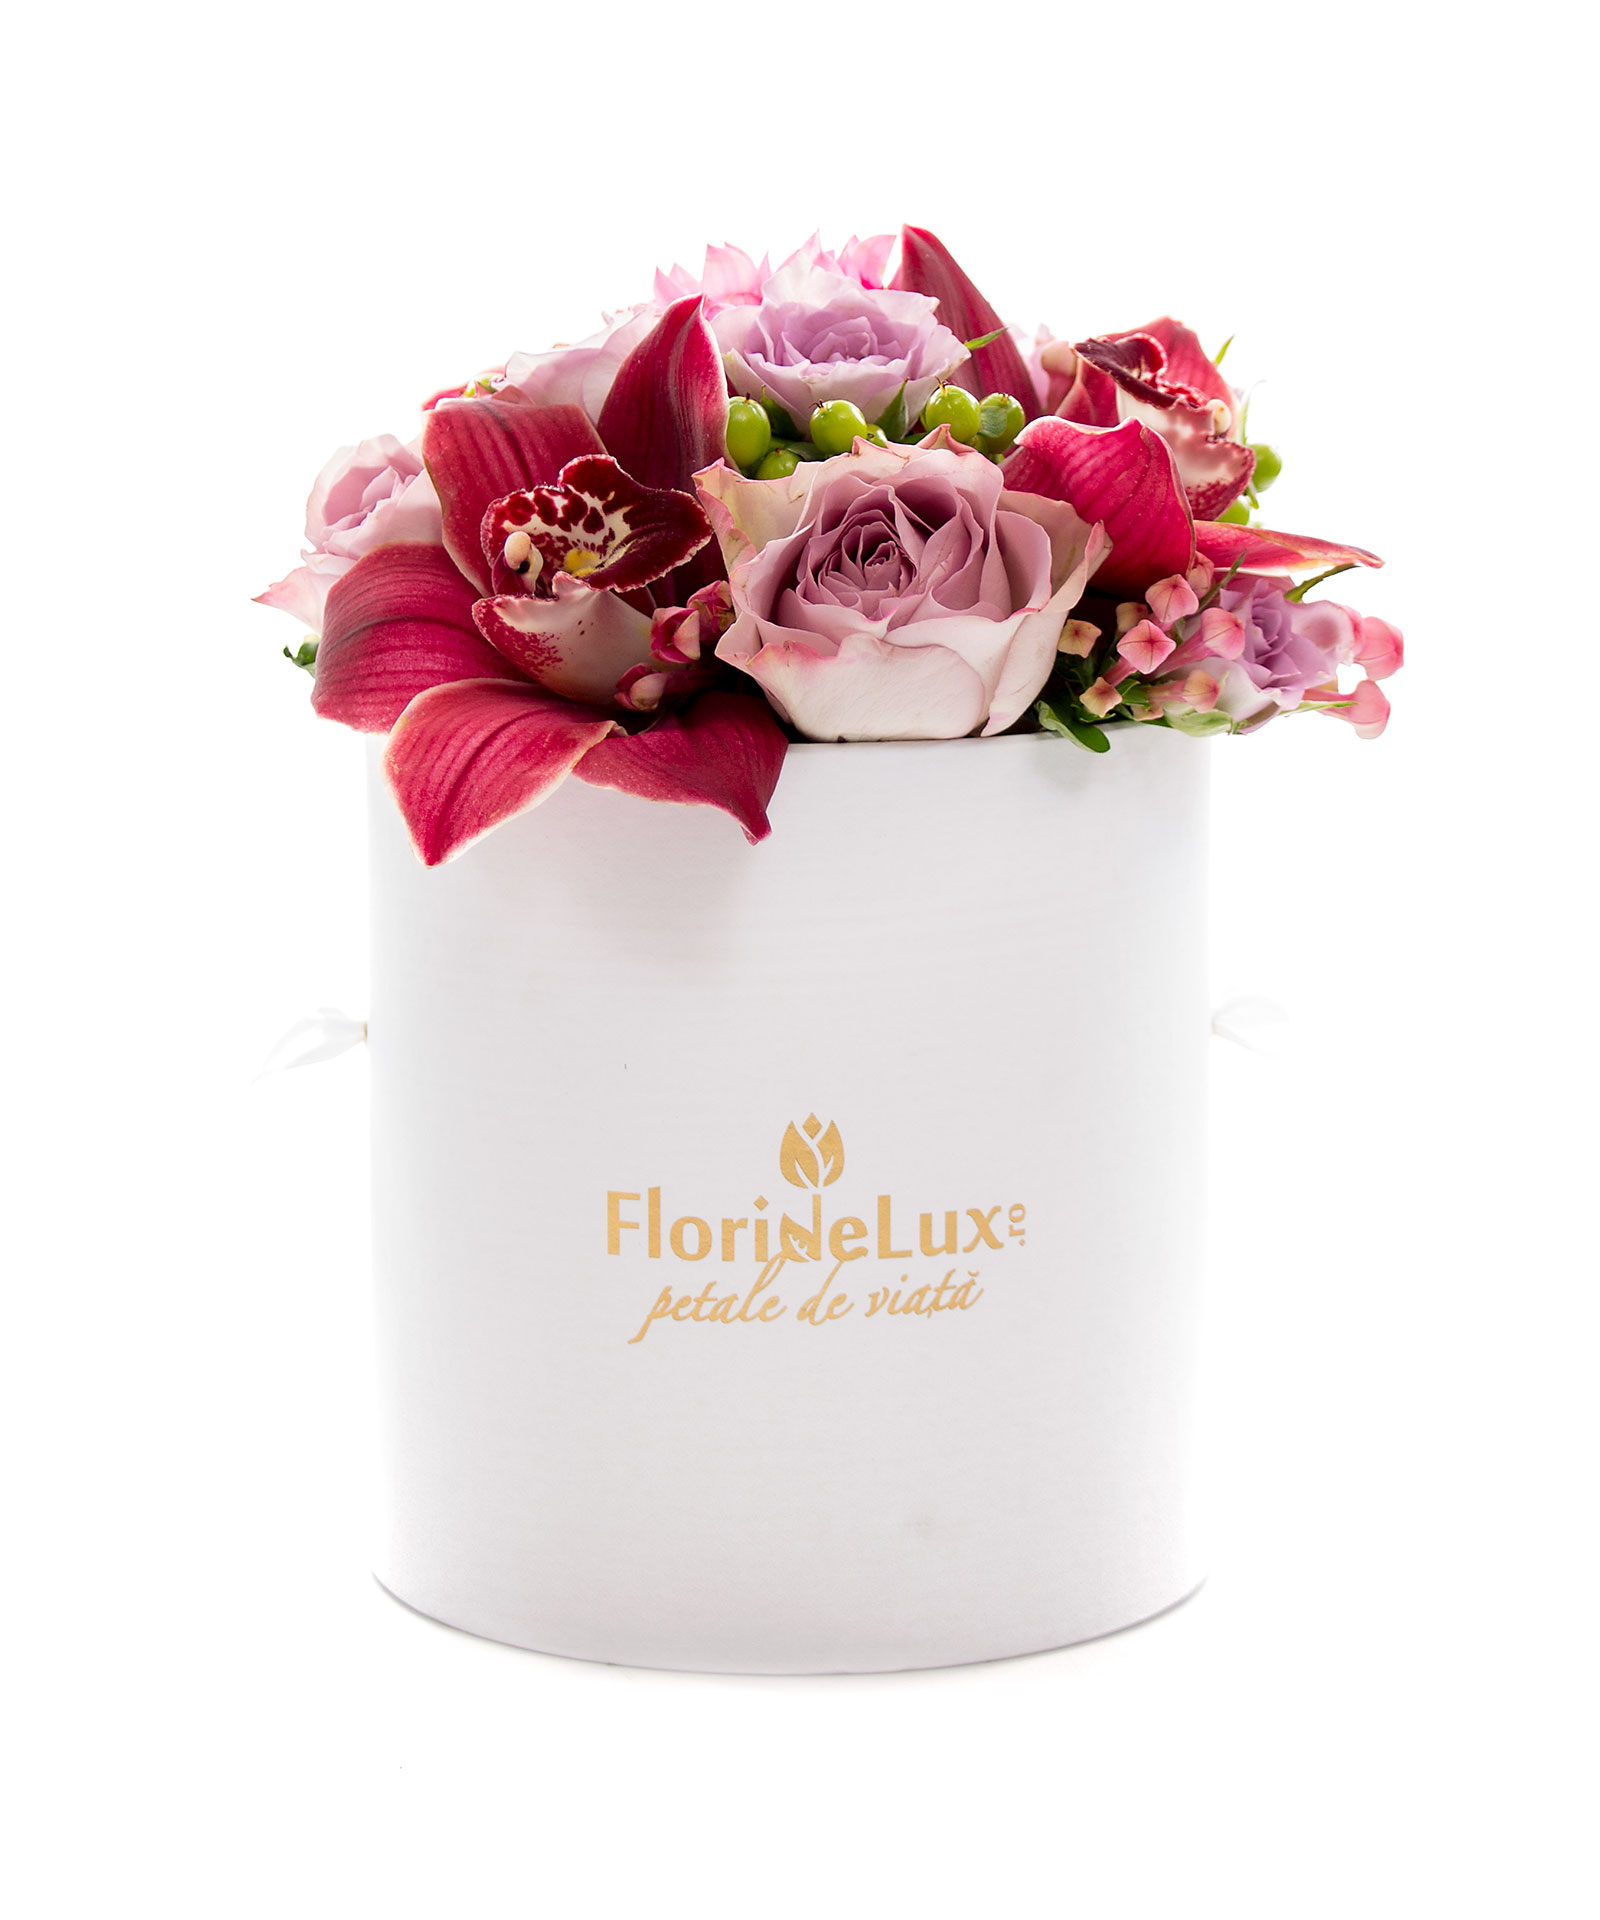 Cutie de lux trandafiri, orhidee si Corton Charlemagne